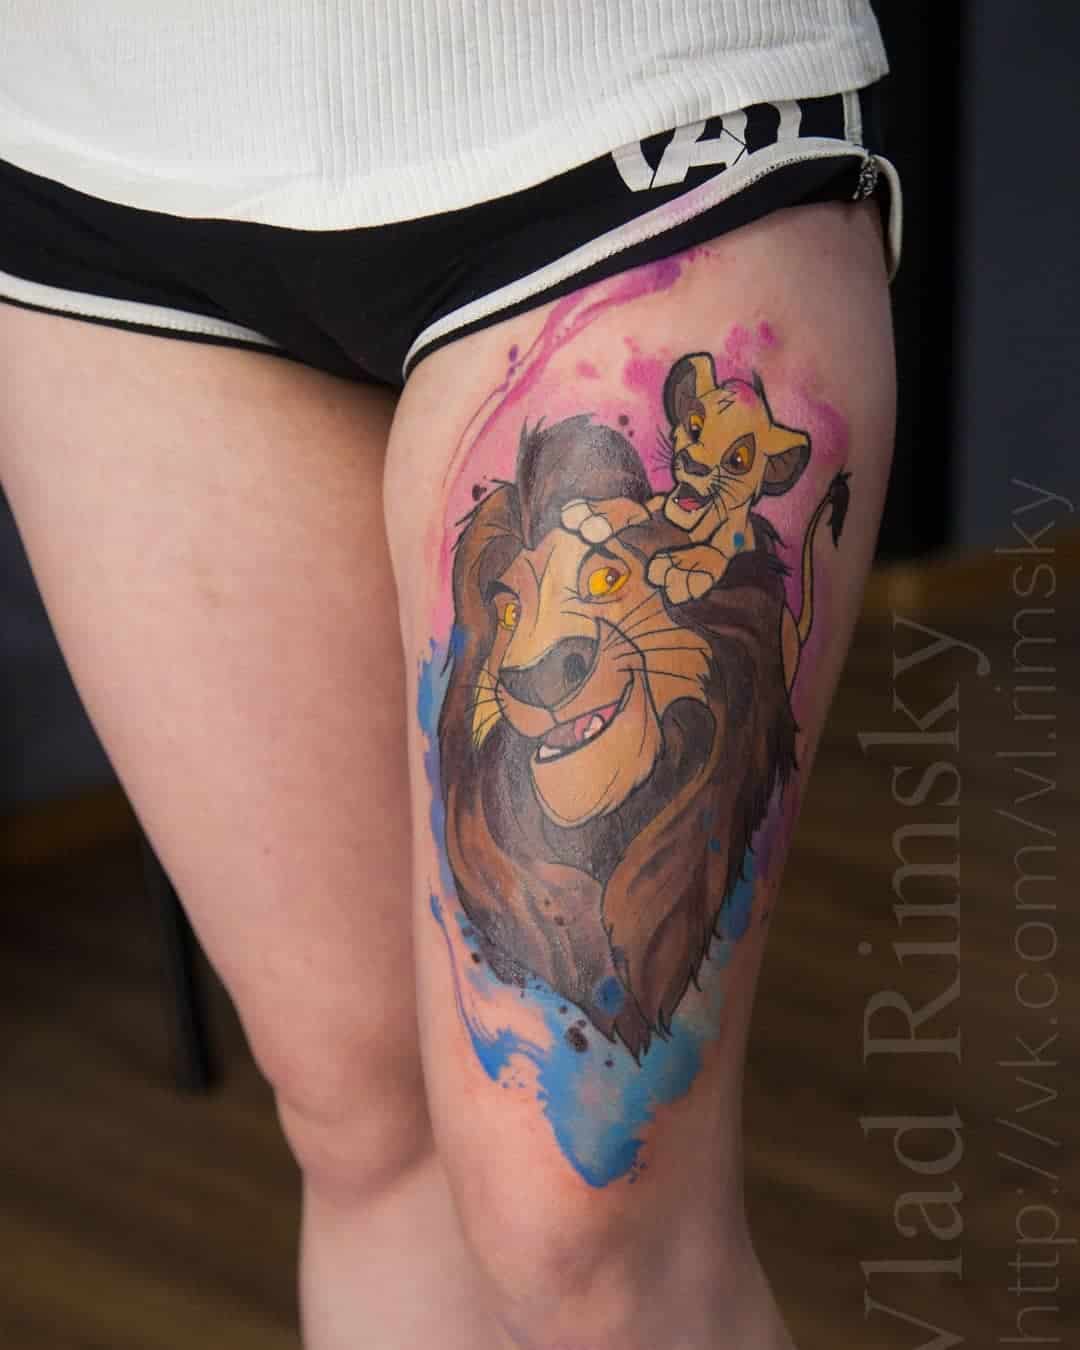 Kleurentattoo van Mufasa en Simba van The Lion king op het bovenbeen met watercolor achtergrond. Gezet bij Inksane tattoo en piercing.